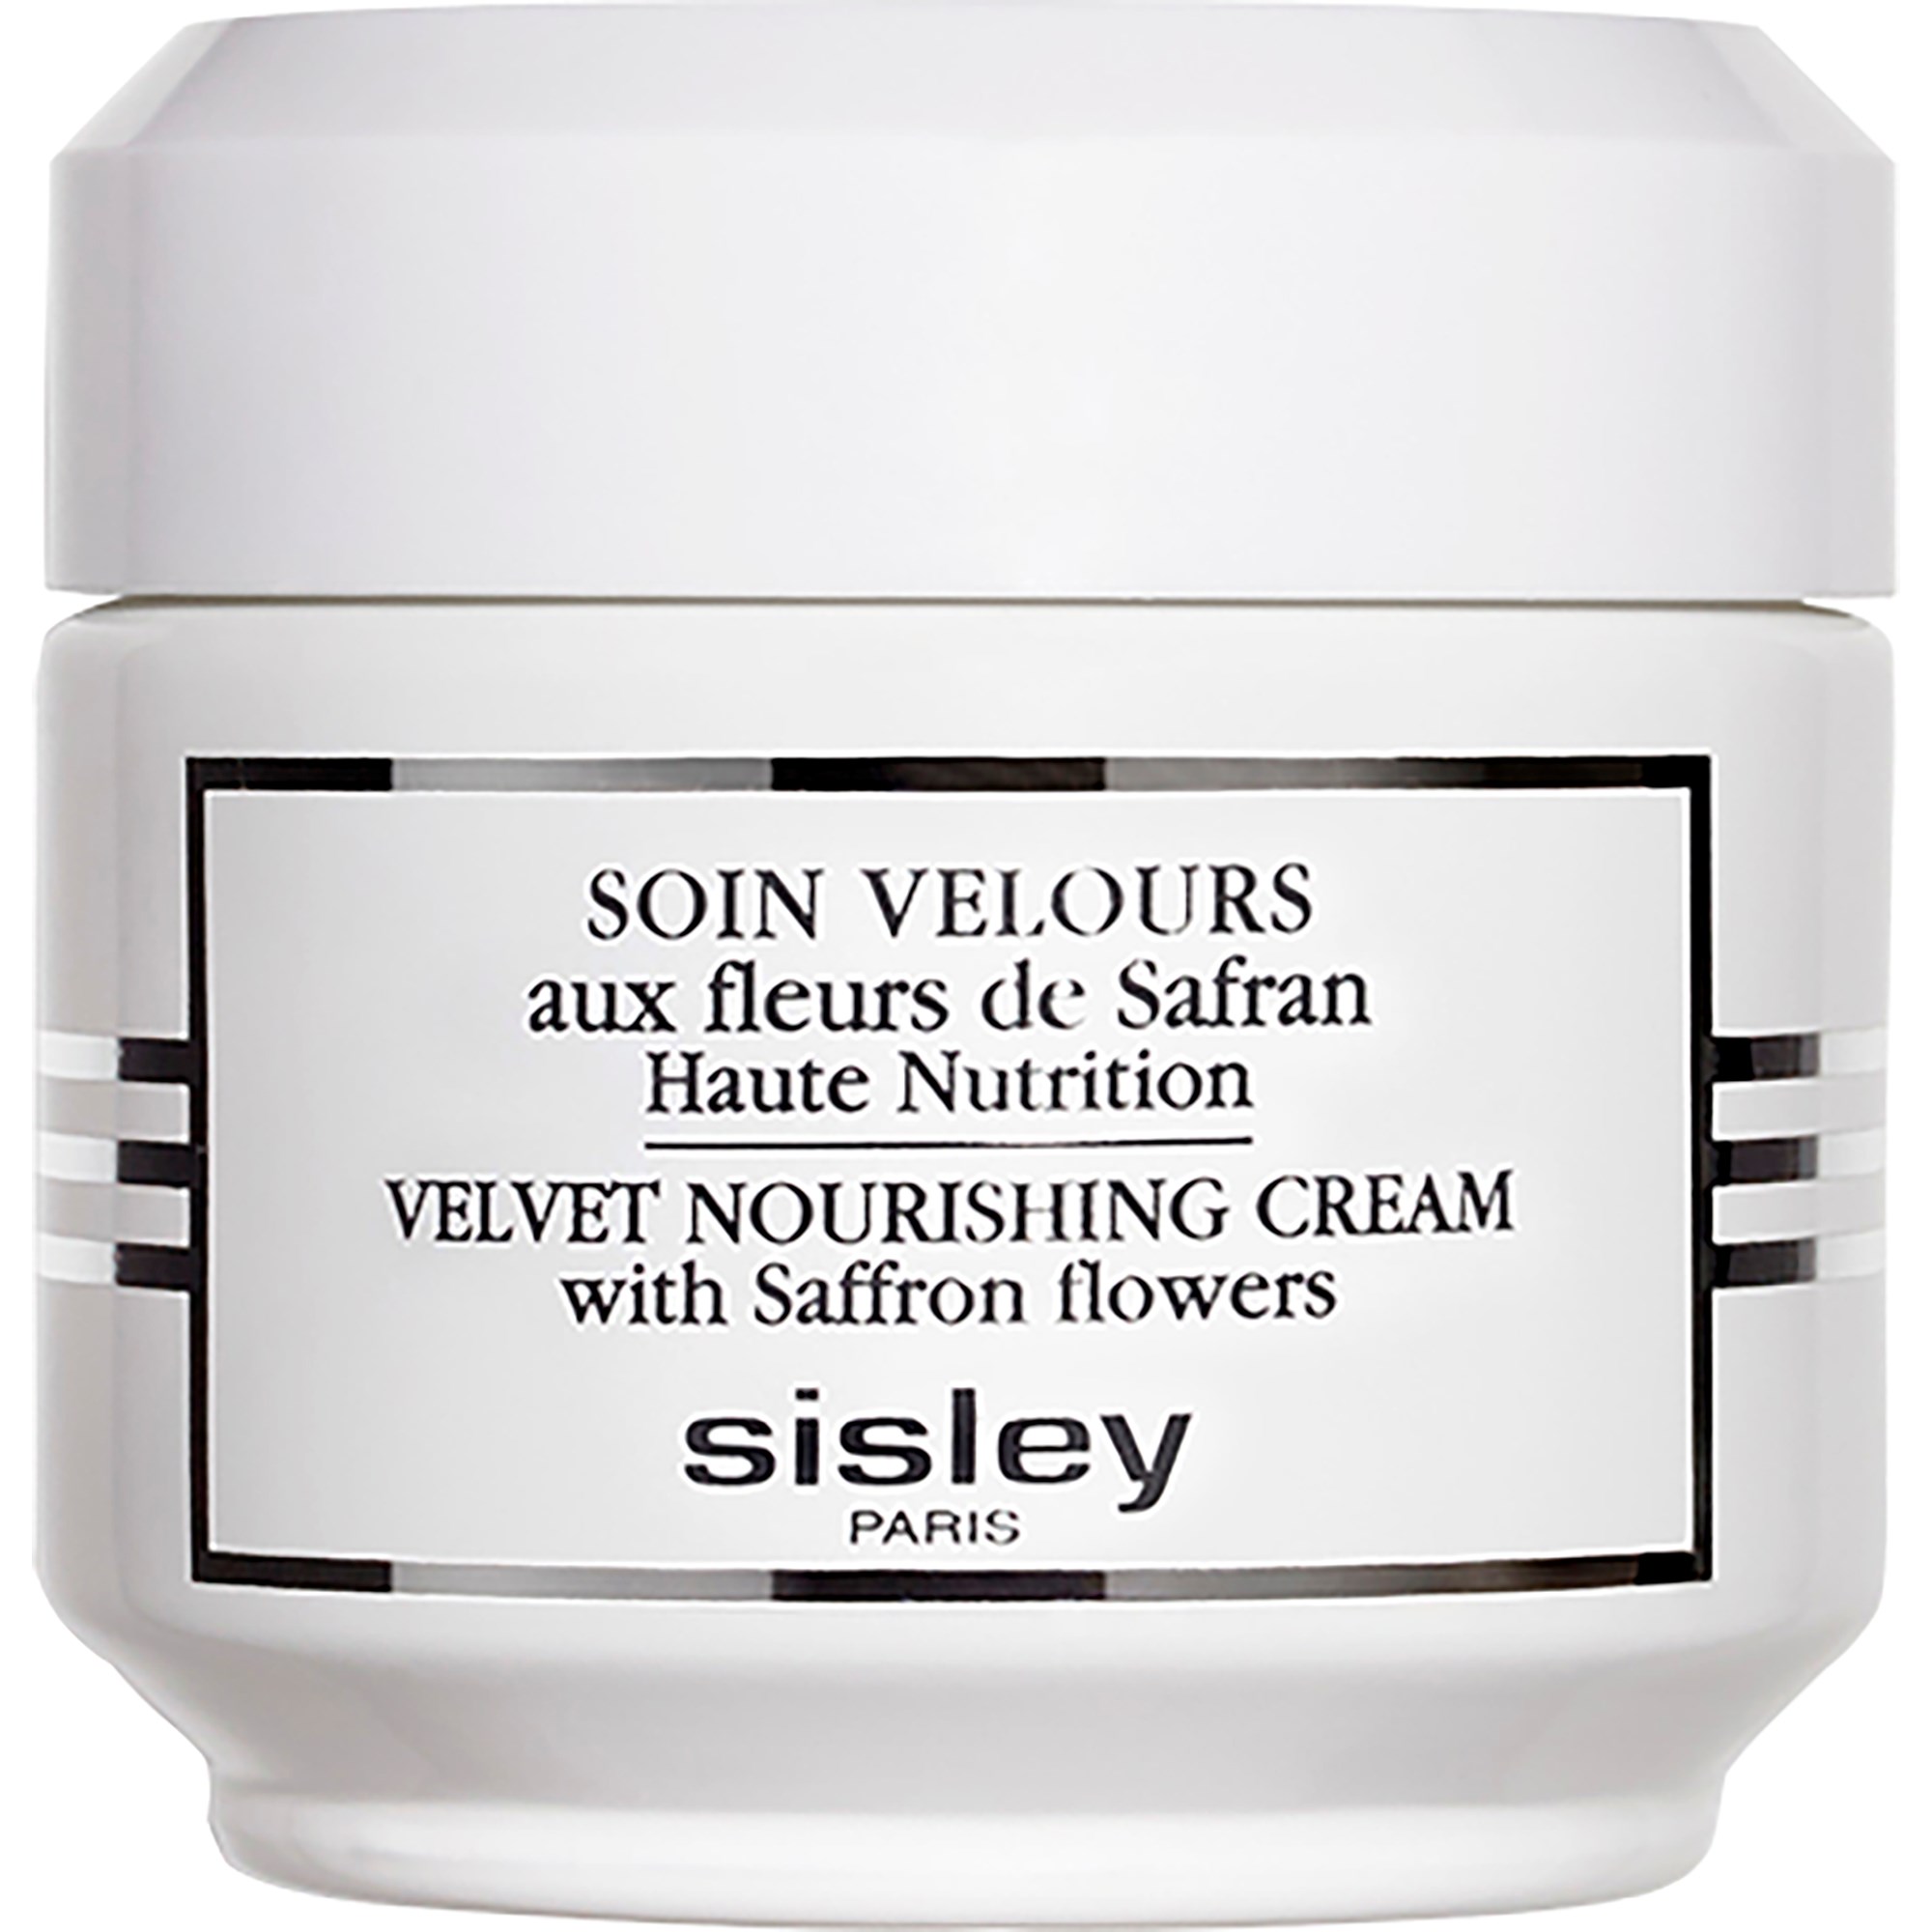 Sisley Velvet Nouris hing Cream 50 ml